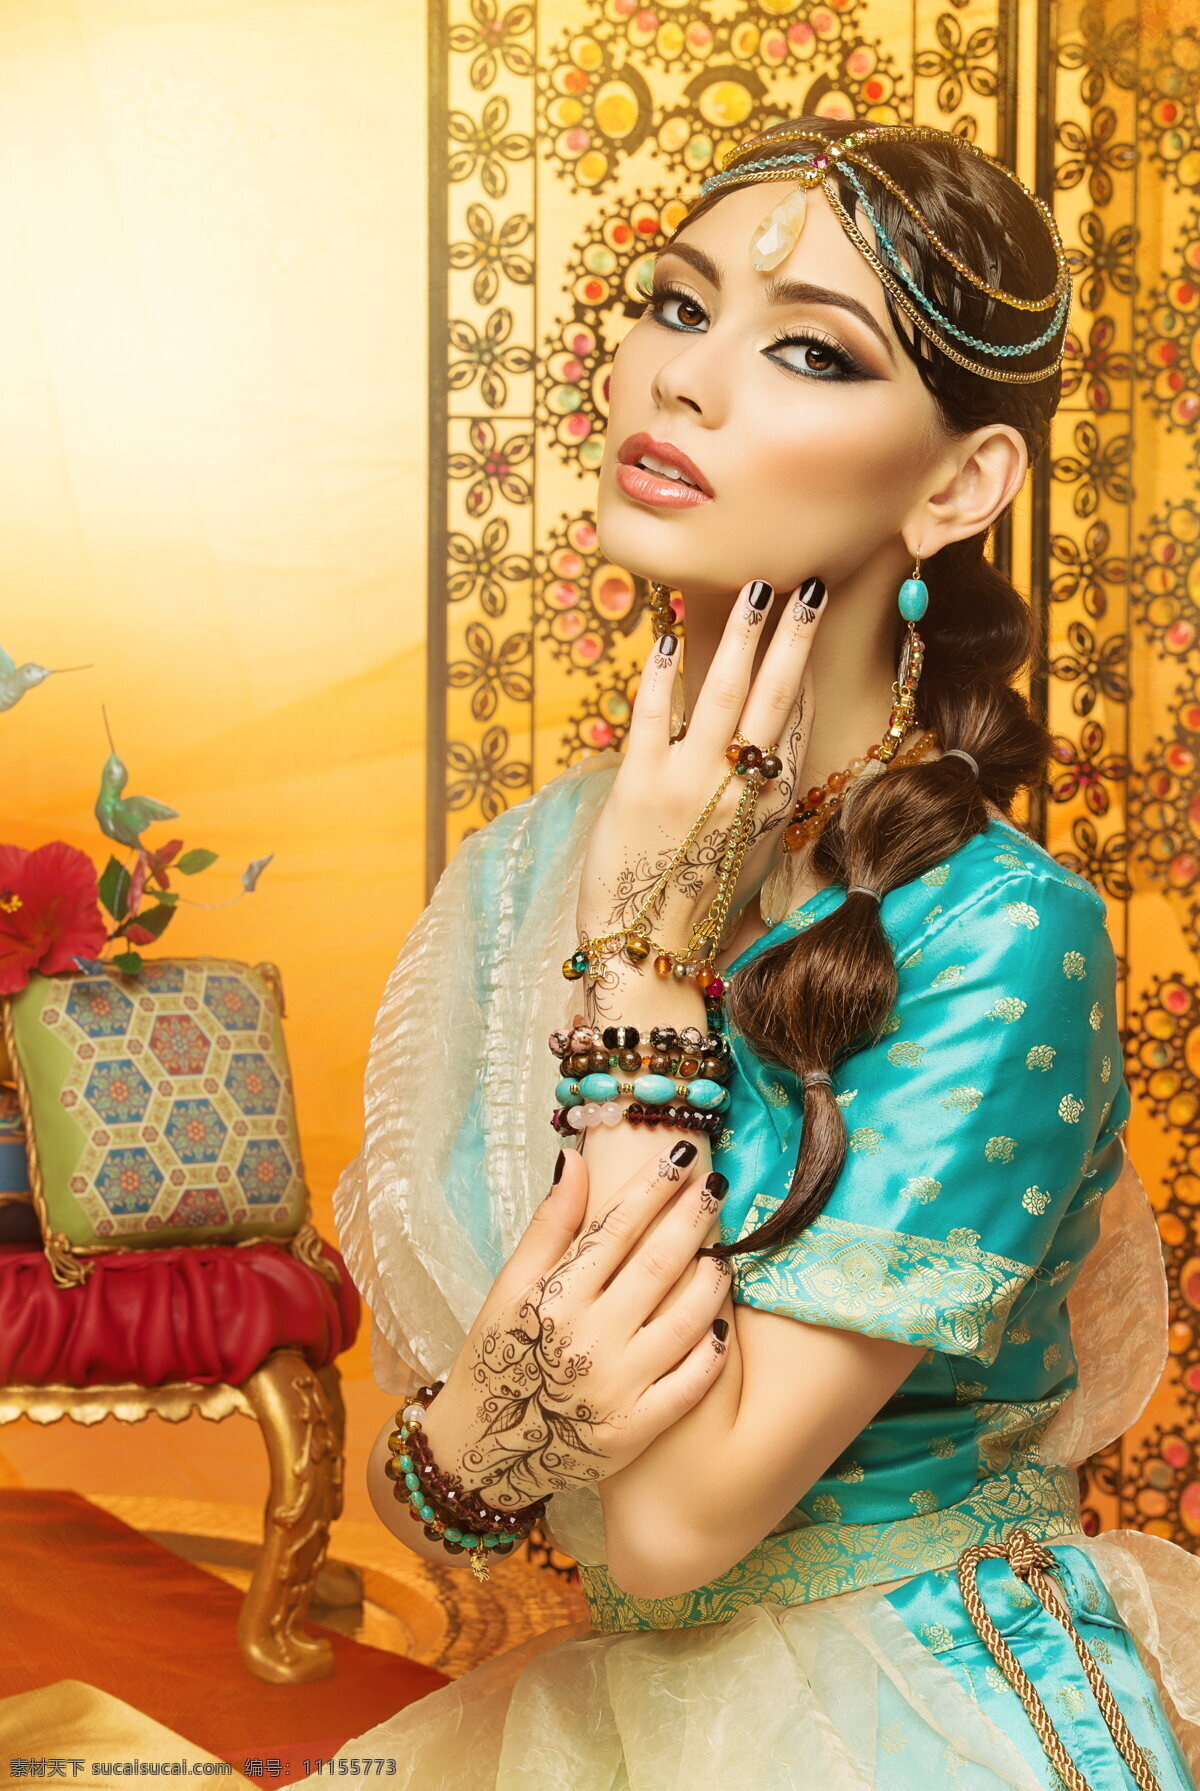 高清 性感 印度 美女图片 气质 美女 亚洲美女 头饰